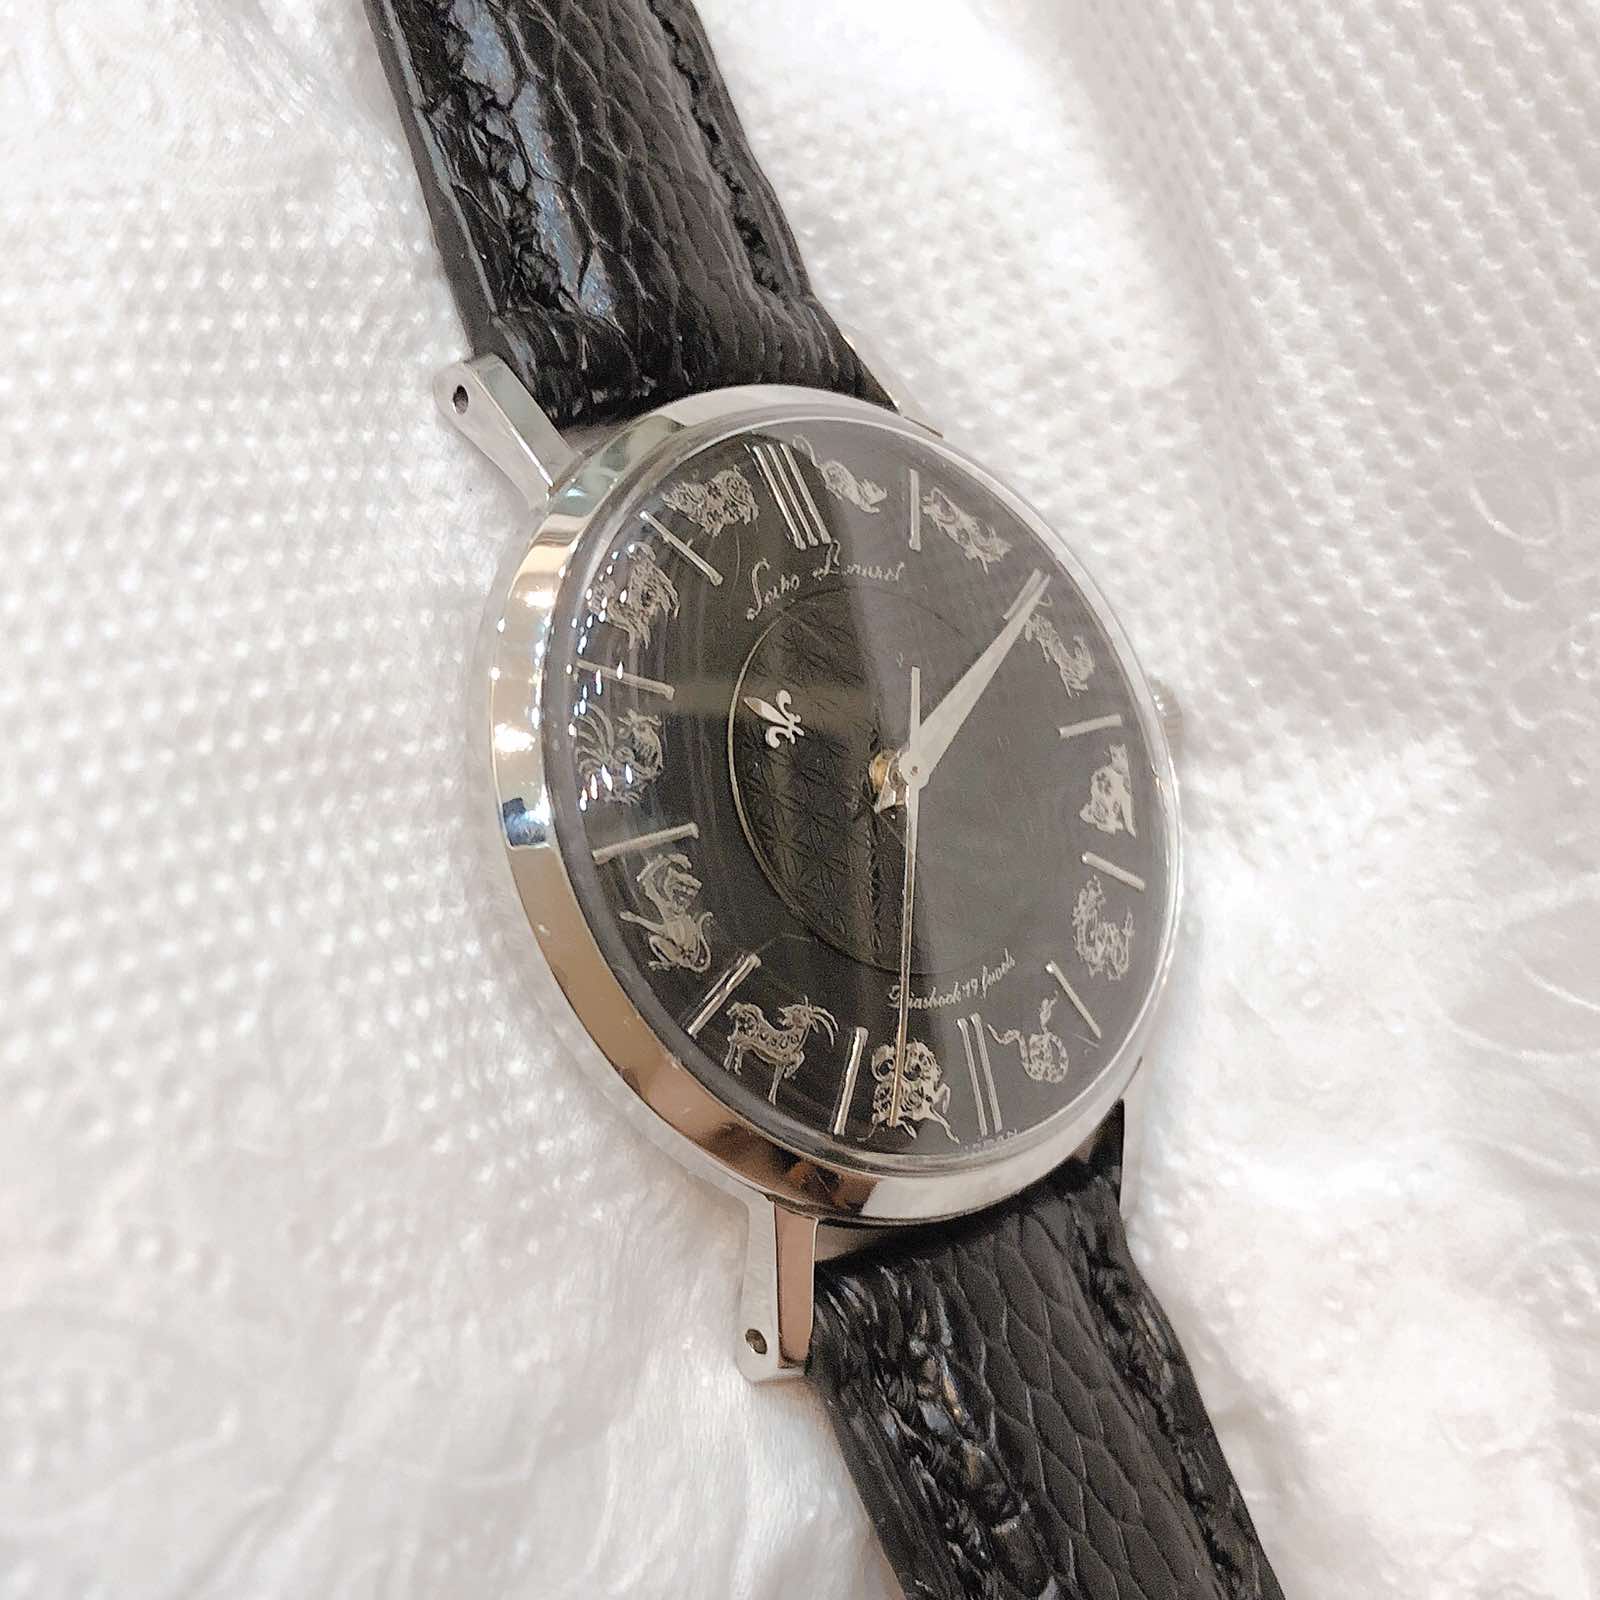 Đồng hồ cổ Seiko kim đĩa 12 con giáp chính hãng nhật bản